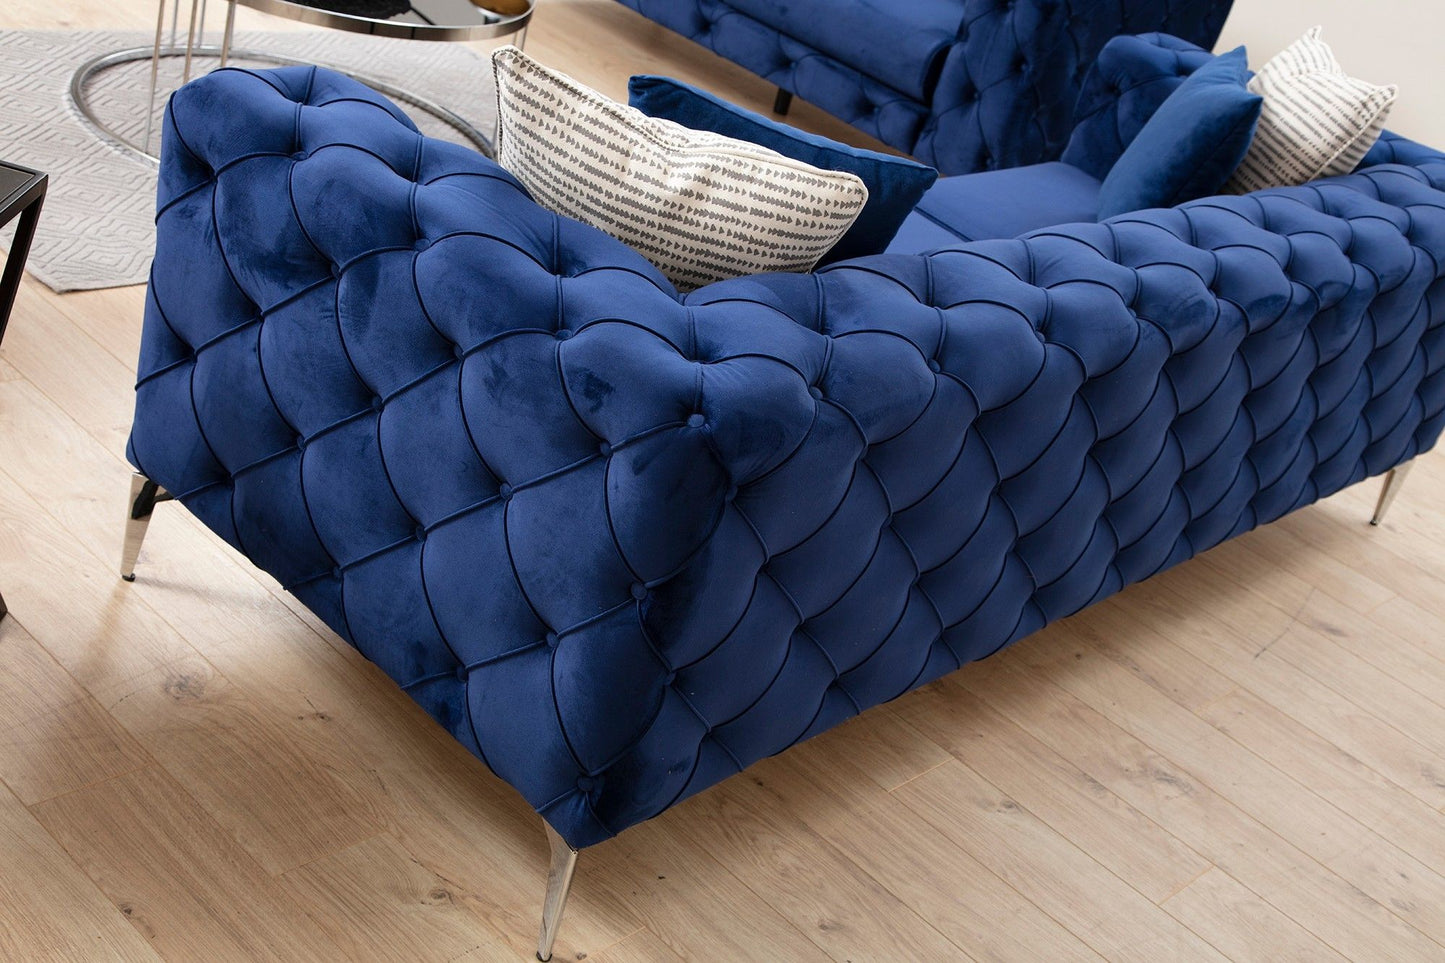 Como - Marineblå - 3-sæders sofa